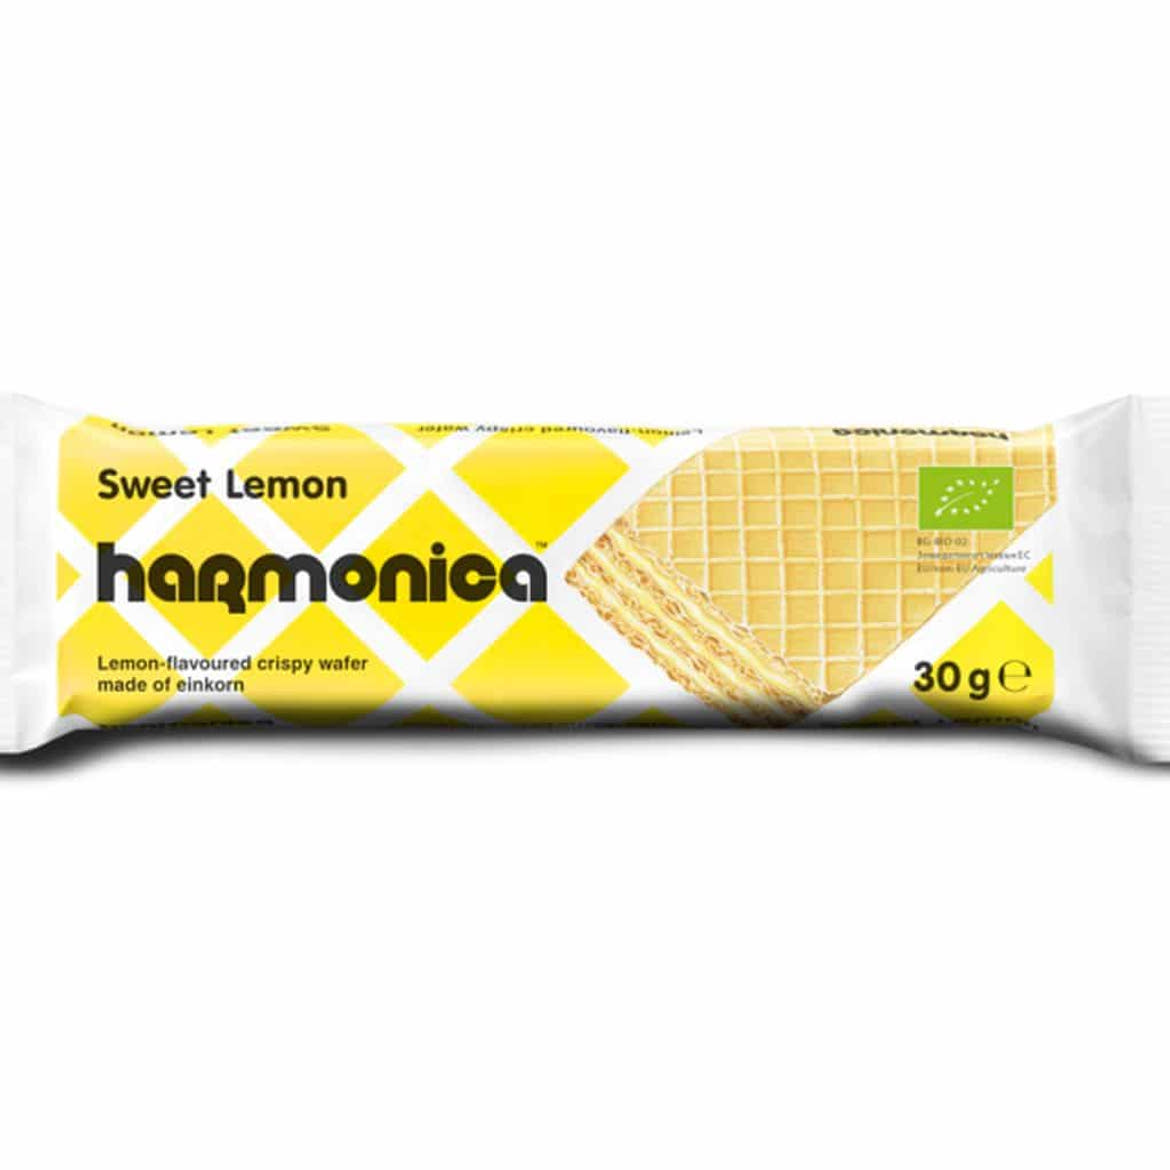 Harmonica BIO Nápolyi alakor ősbúzalisztből, citromos